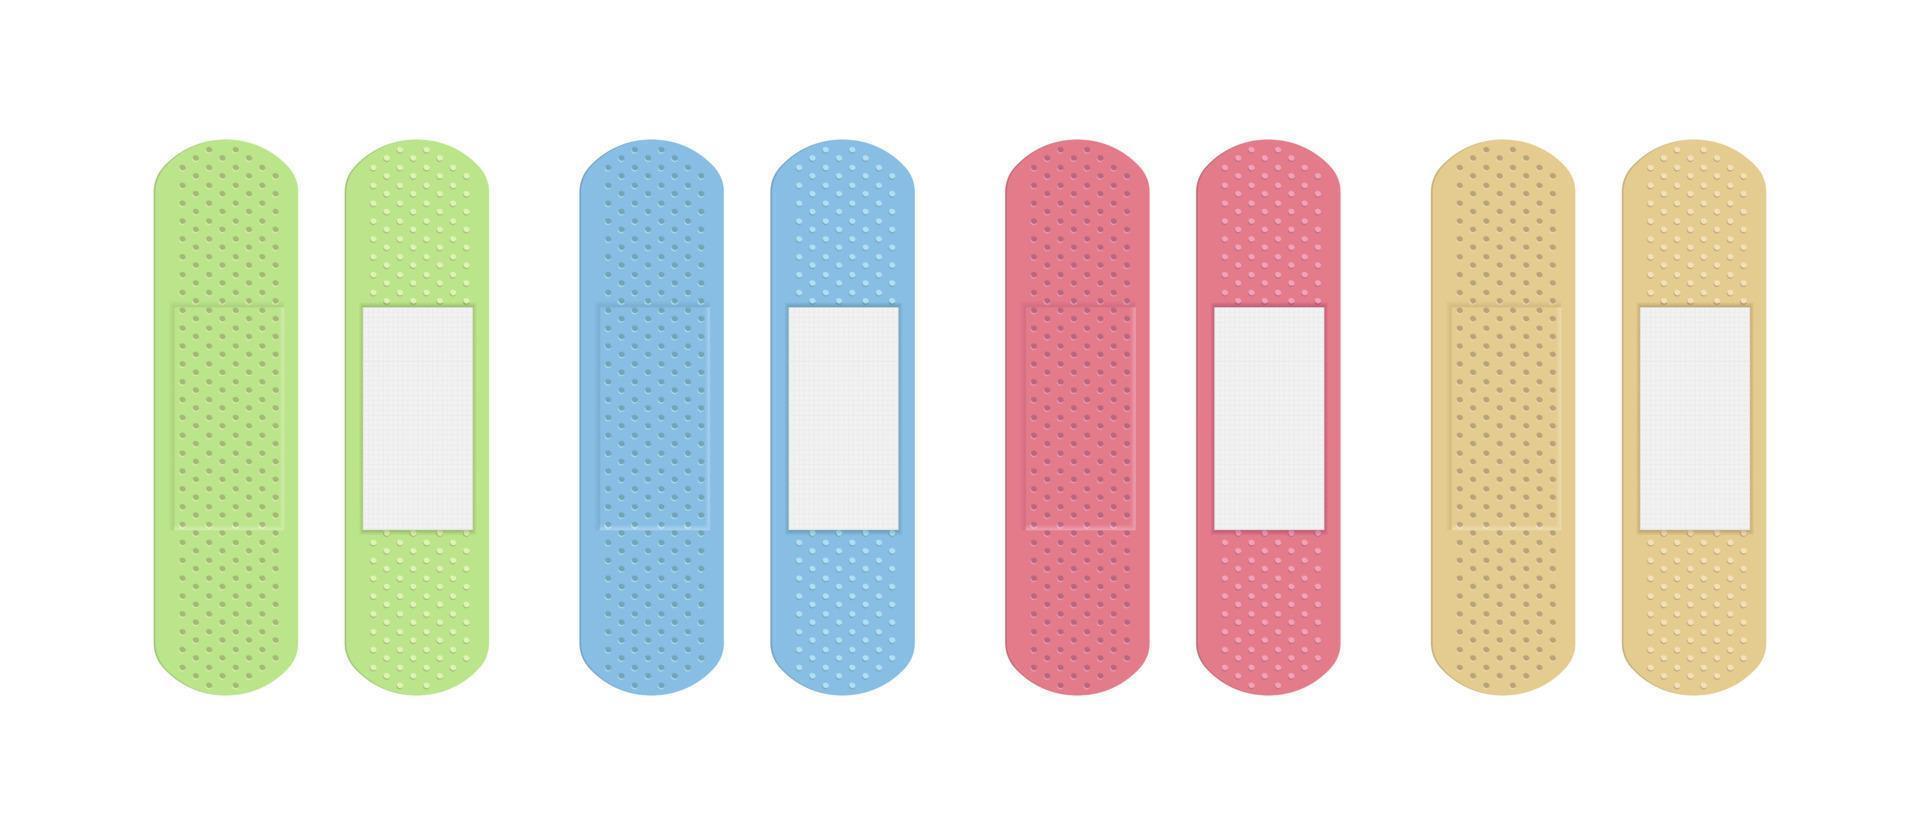 medische zelfklevende pleister van verschillende kleuren set. medische bandage beige, groen, roze en blauw. vector